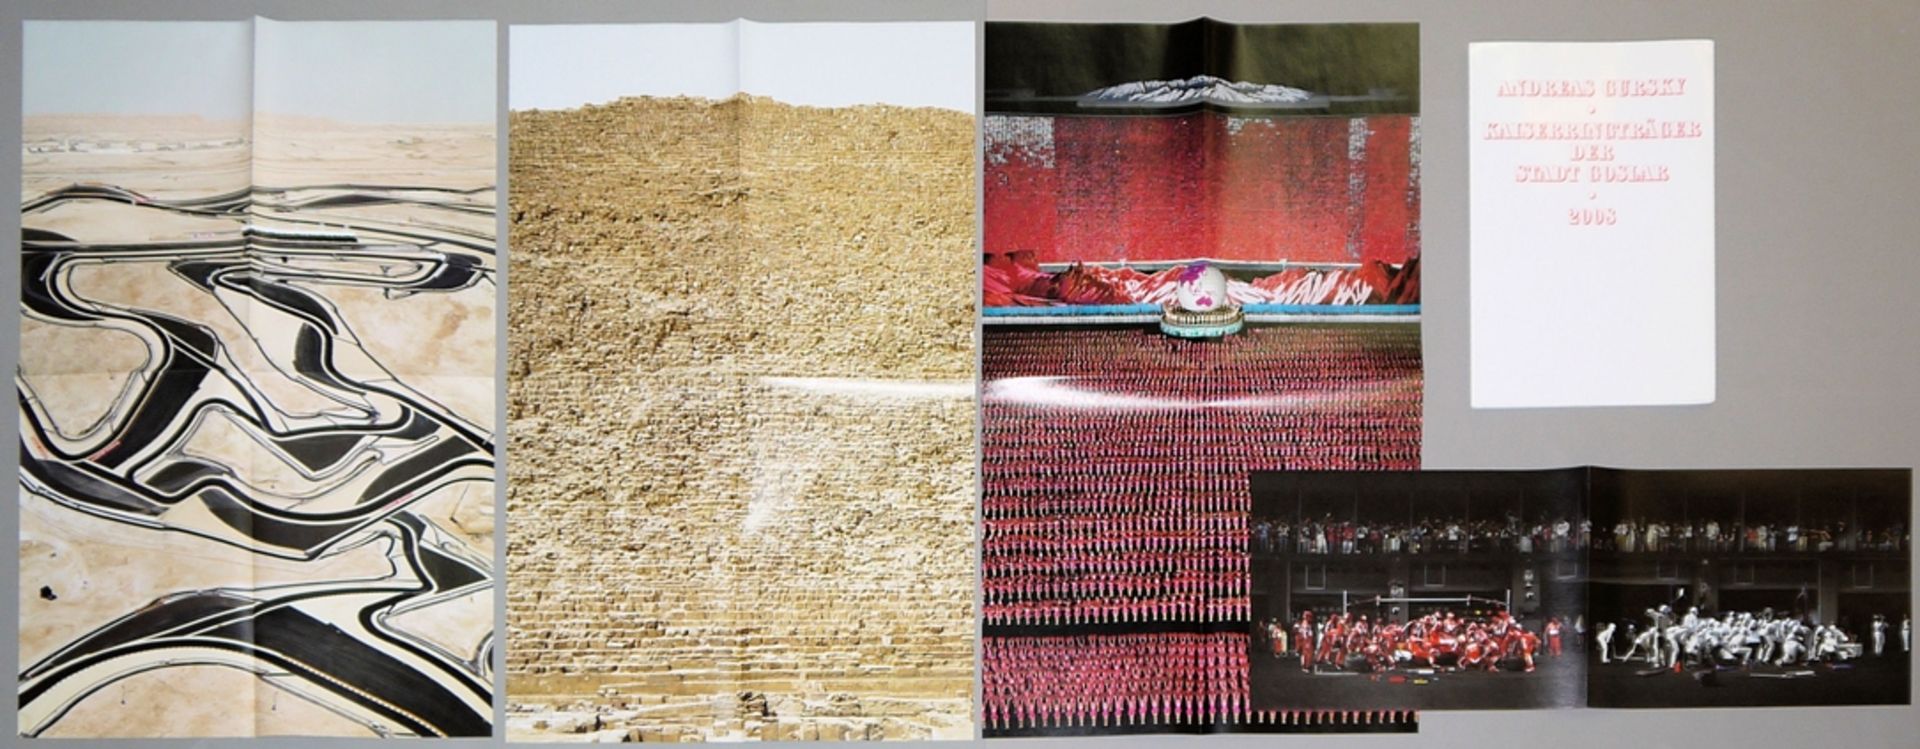 Andreas Gursky, Bahrain I/Cheops/Pyongyang IV/F1 Boxenstopp I, 4 C-prints in Mappe "Kaiserringträge